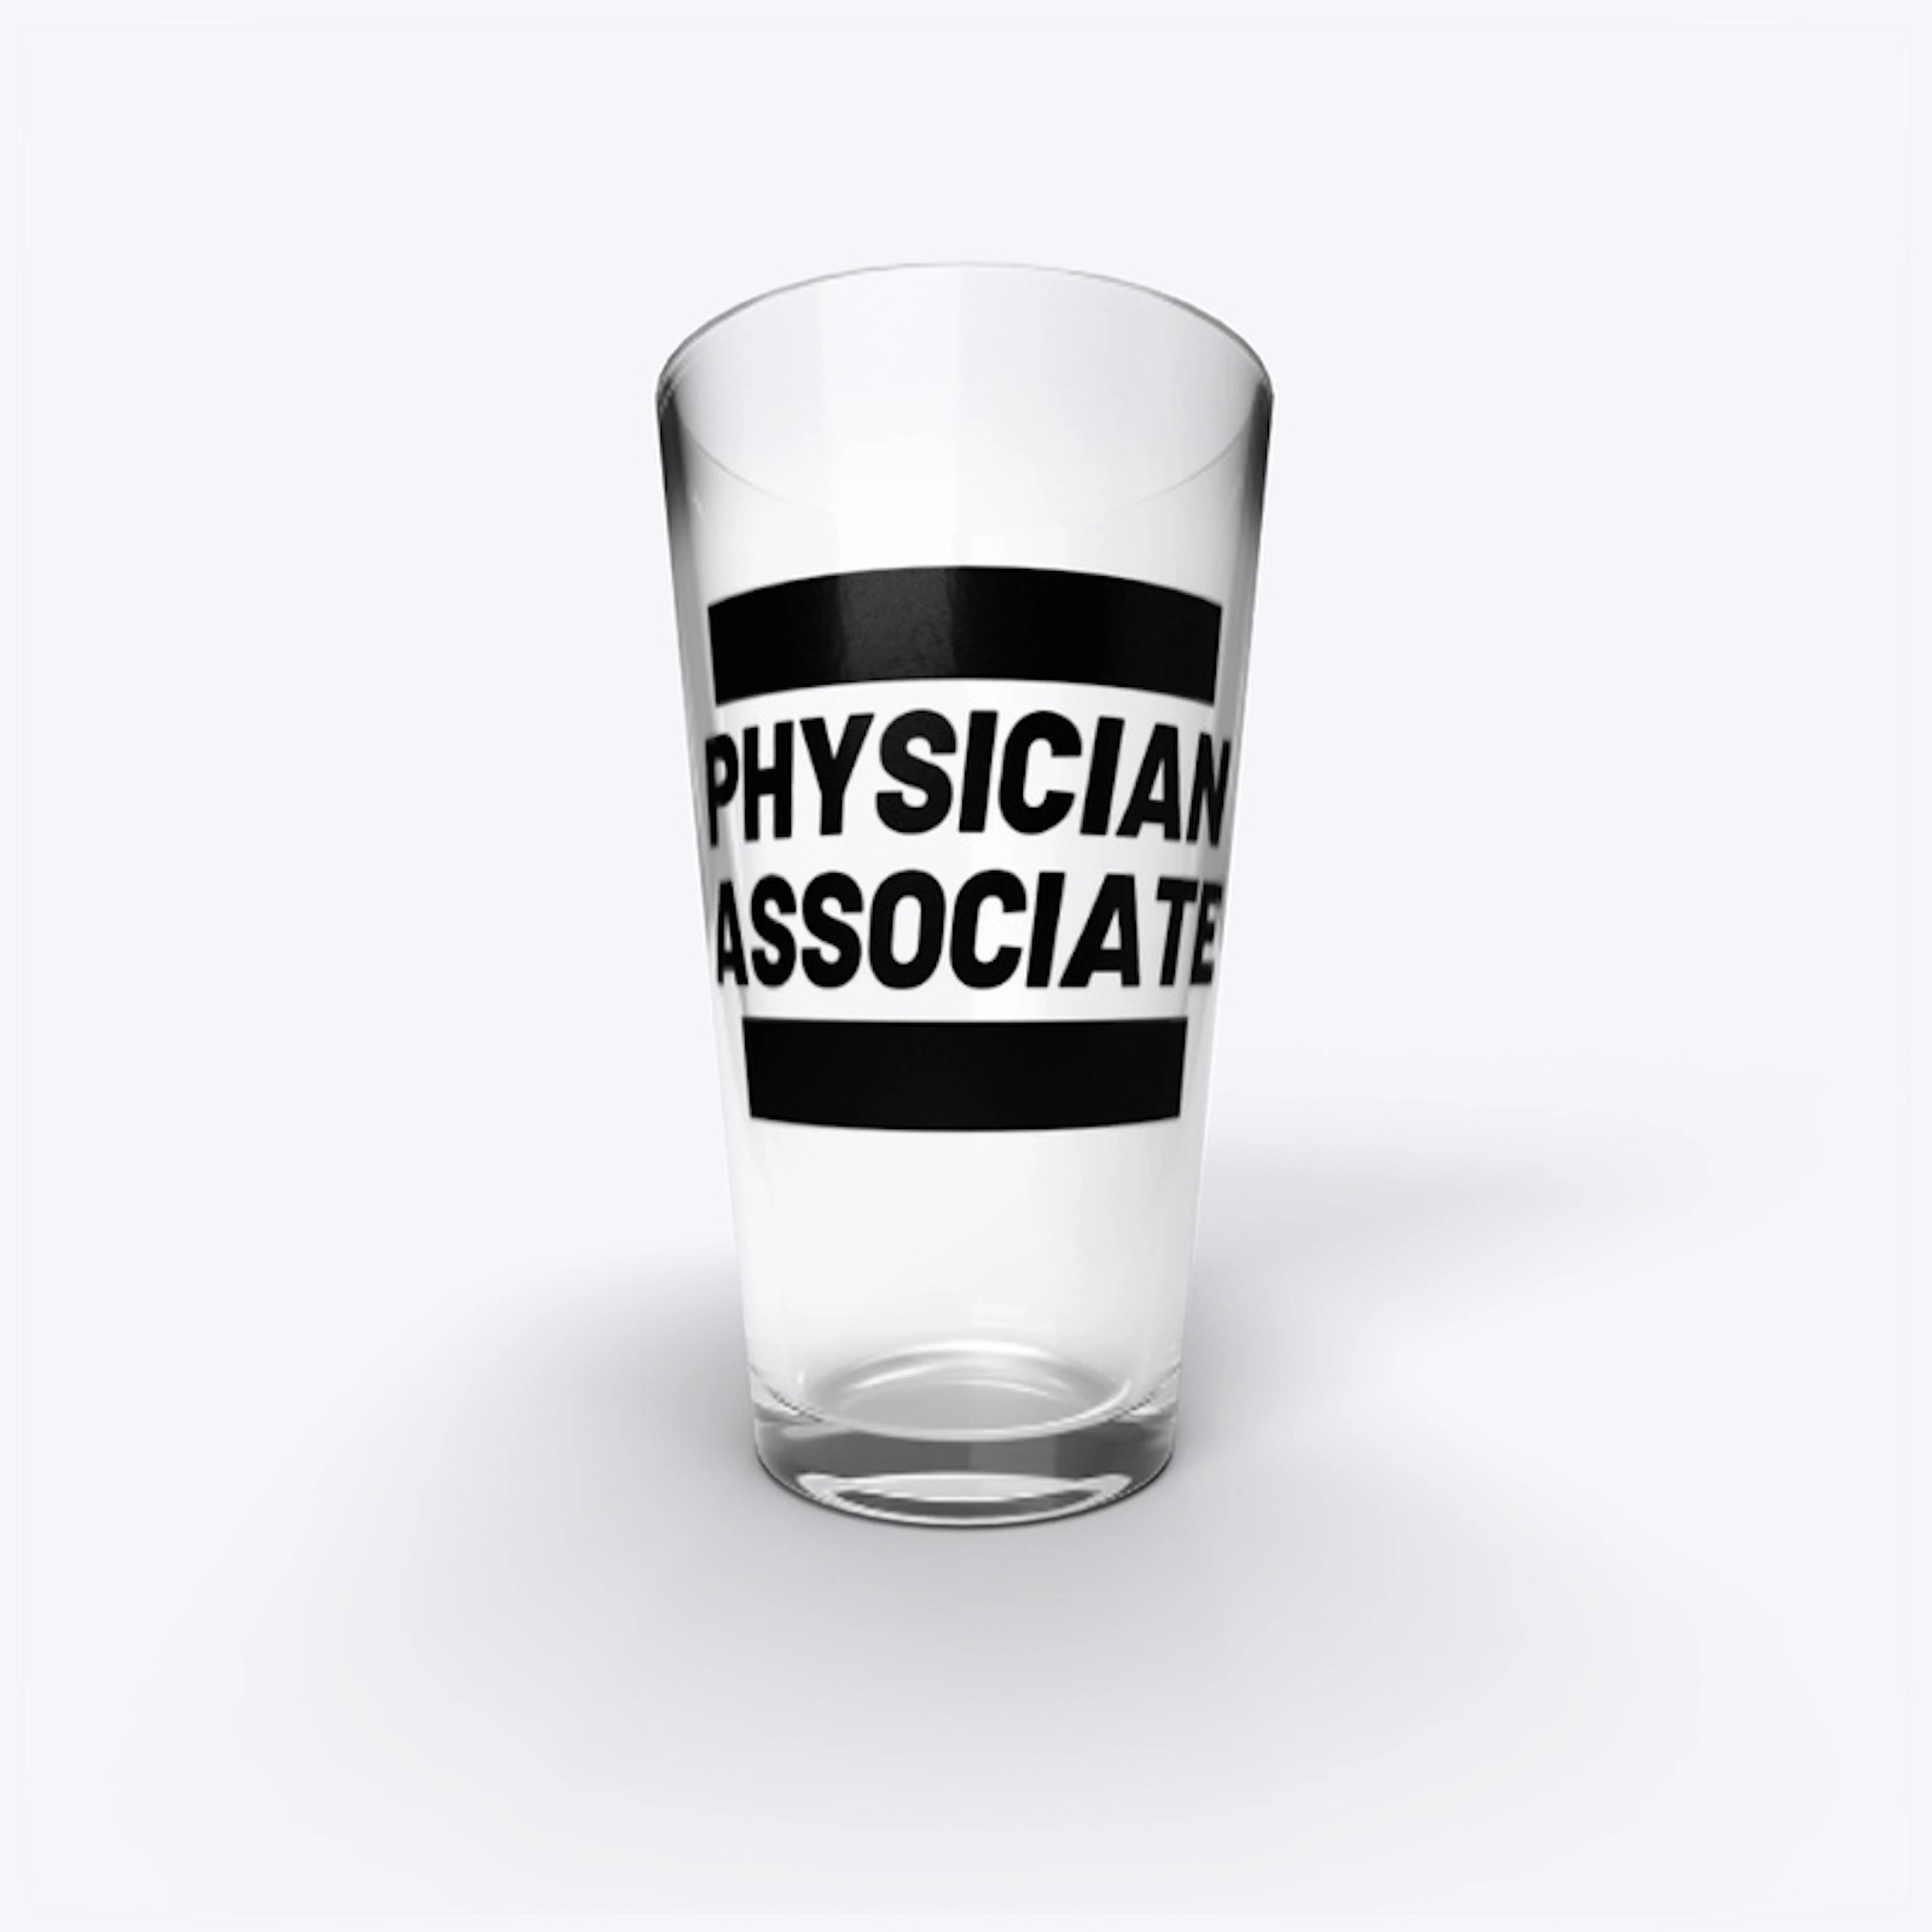 Physician Associate BOLD